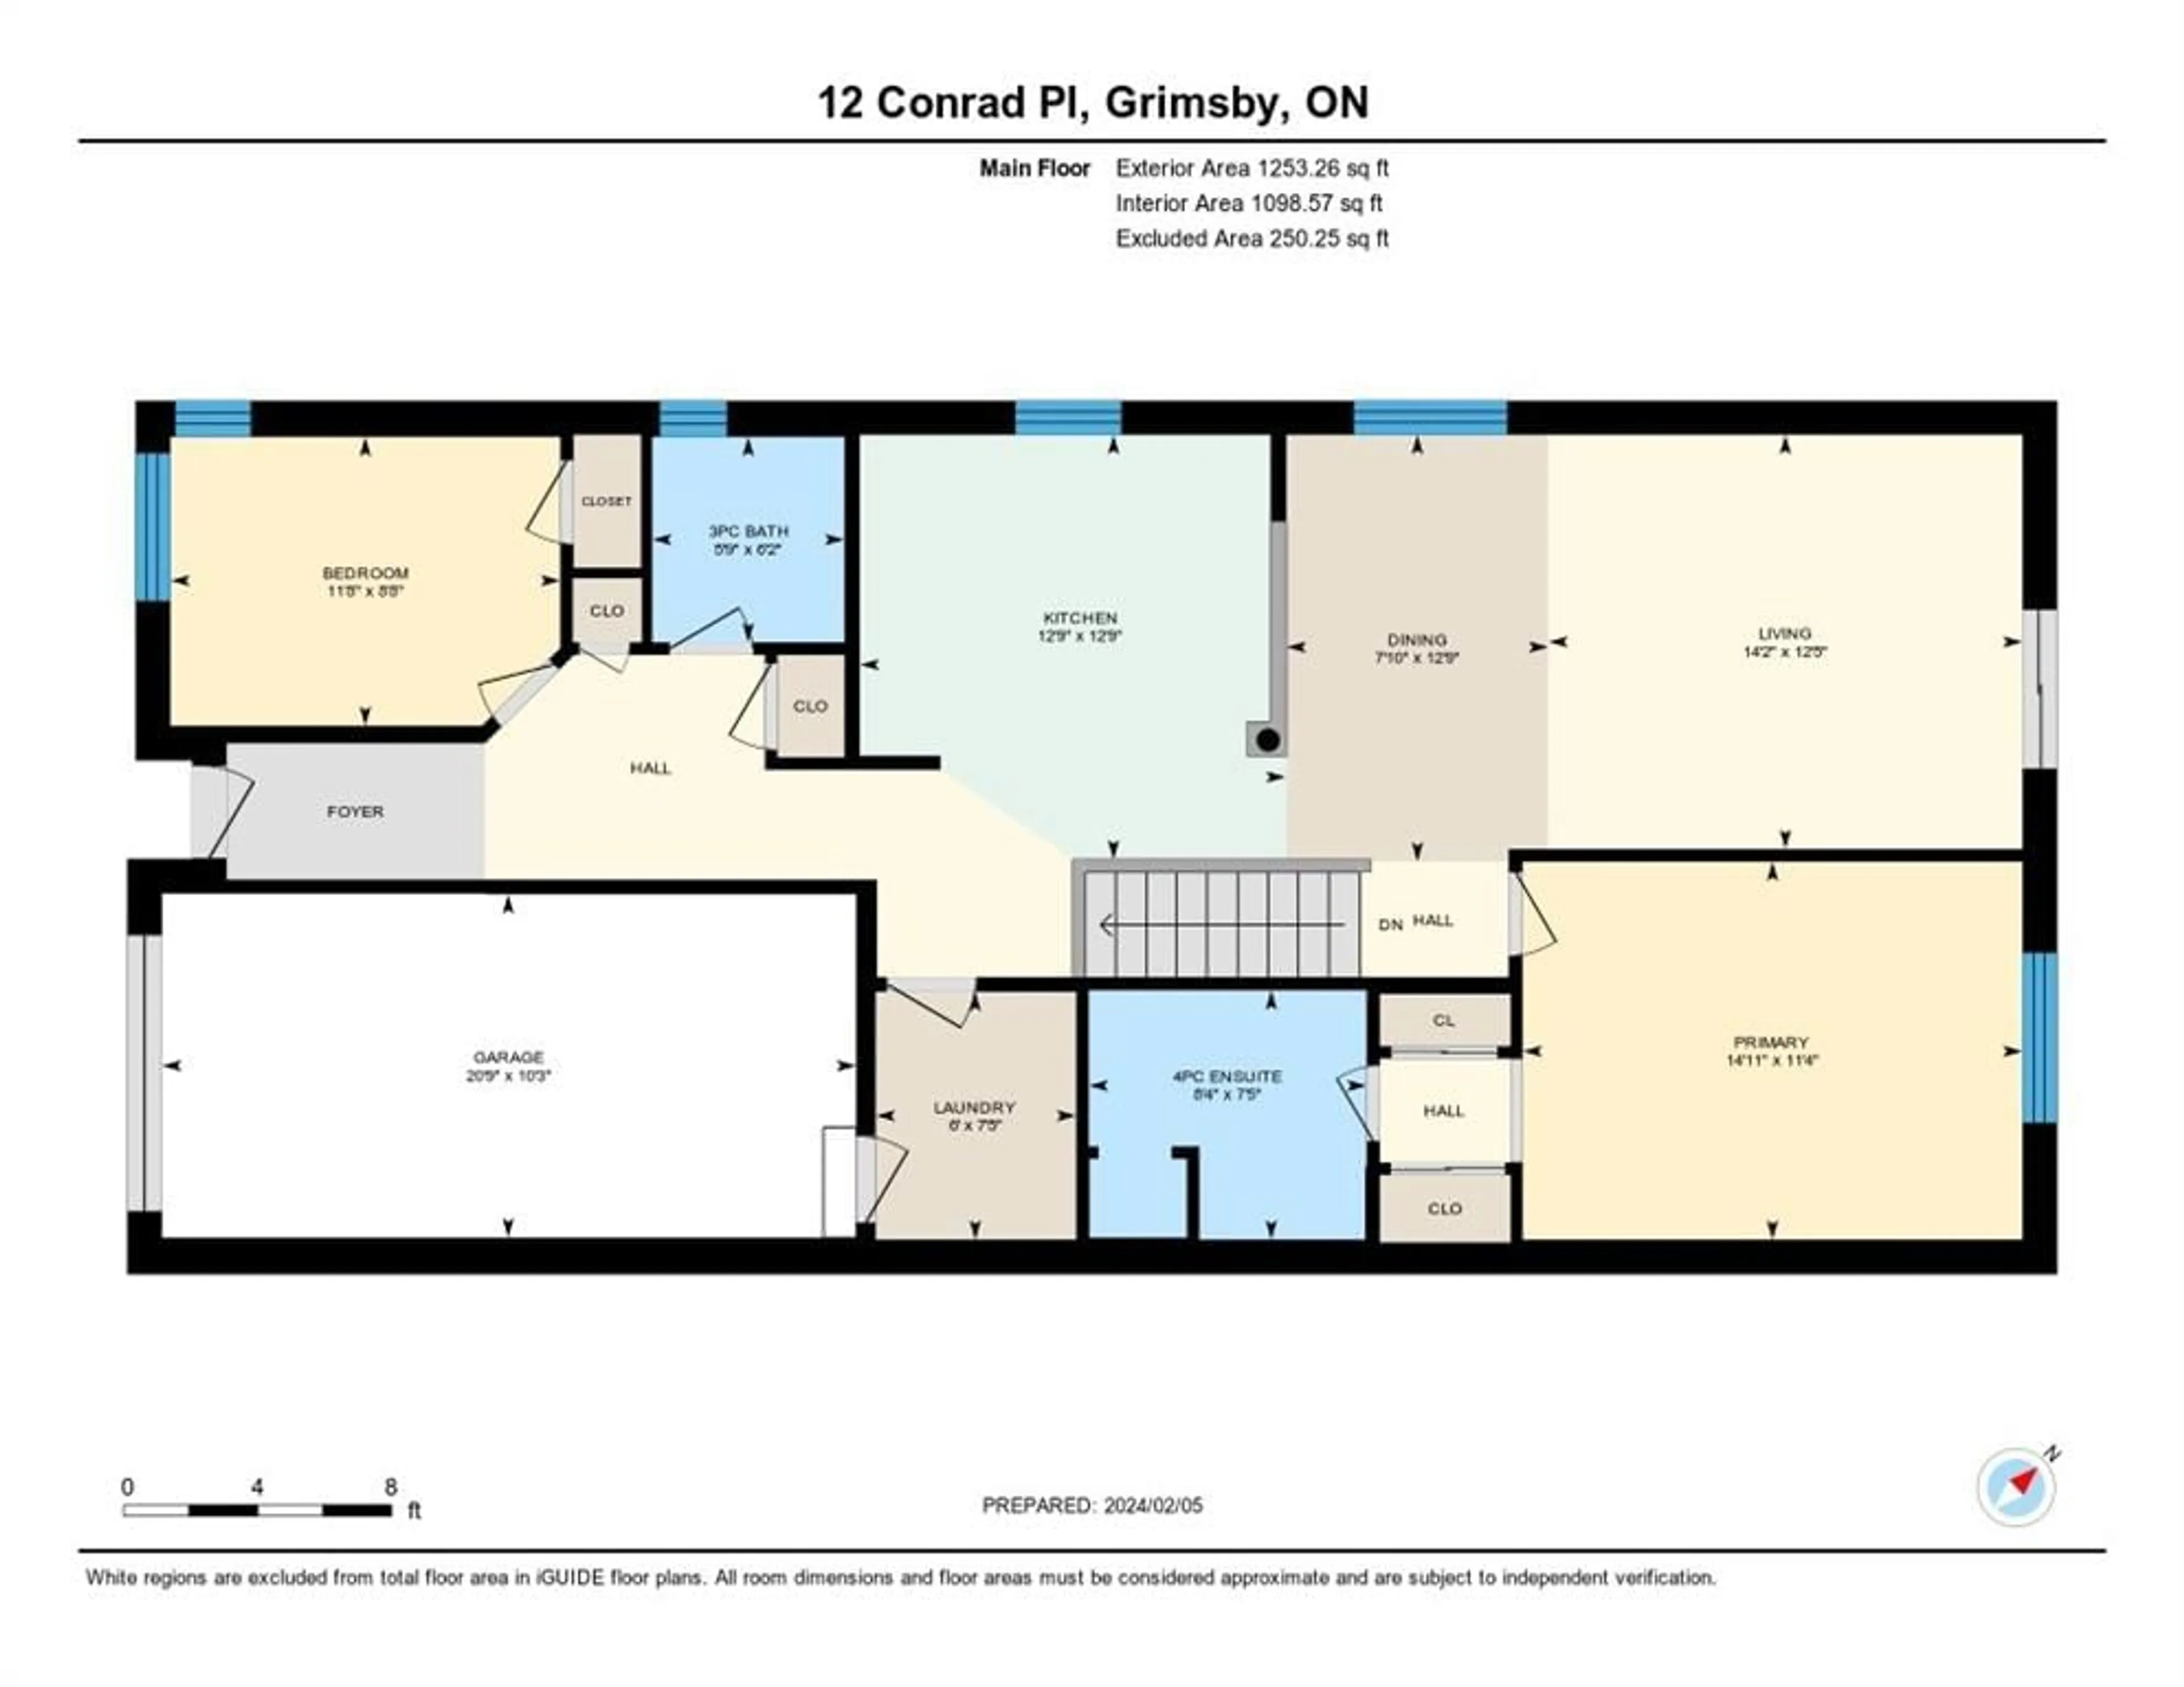 Floor plan for 12 Conrad Pl, Grimsby Ontario L3M 5S5